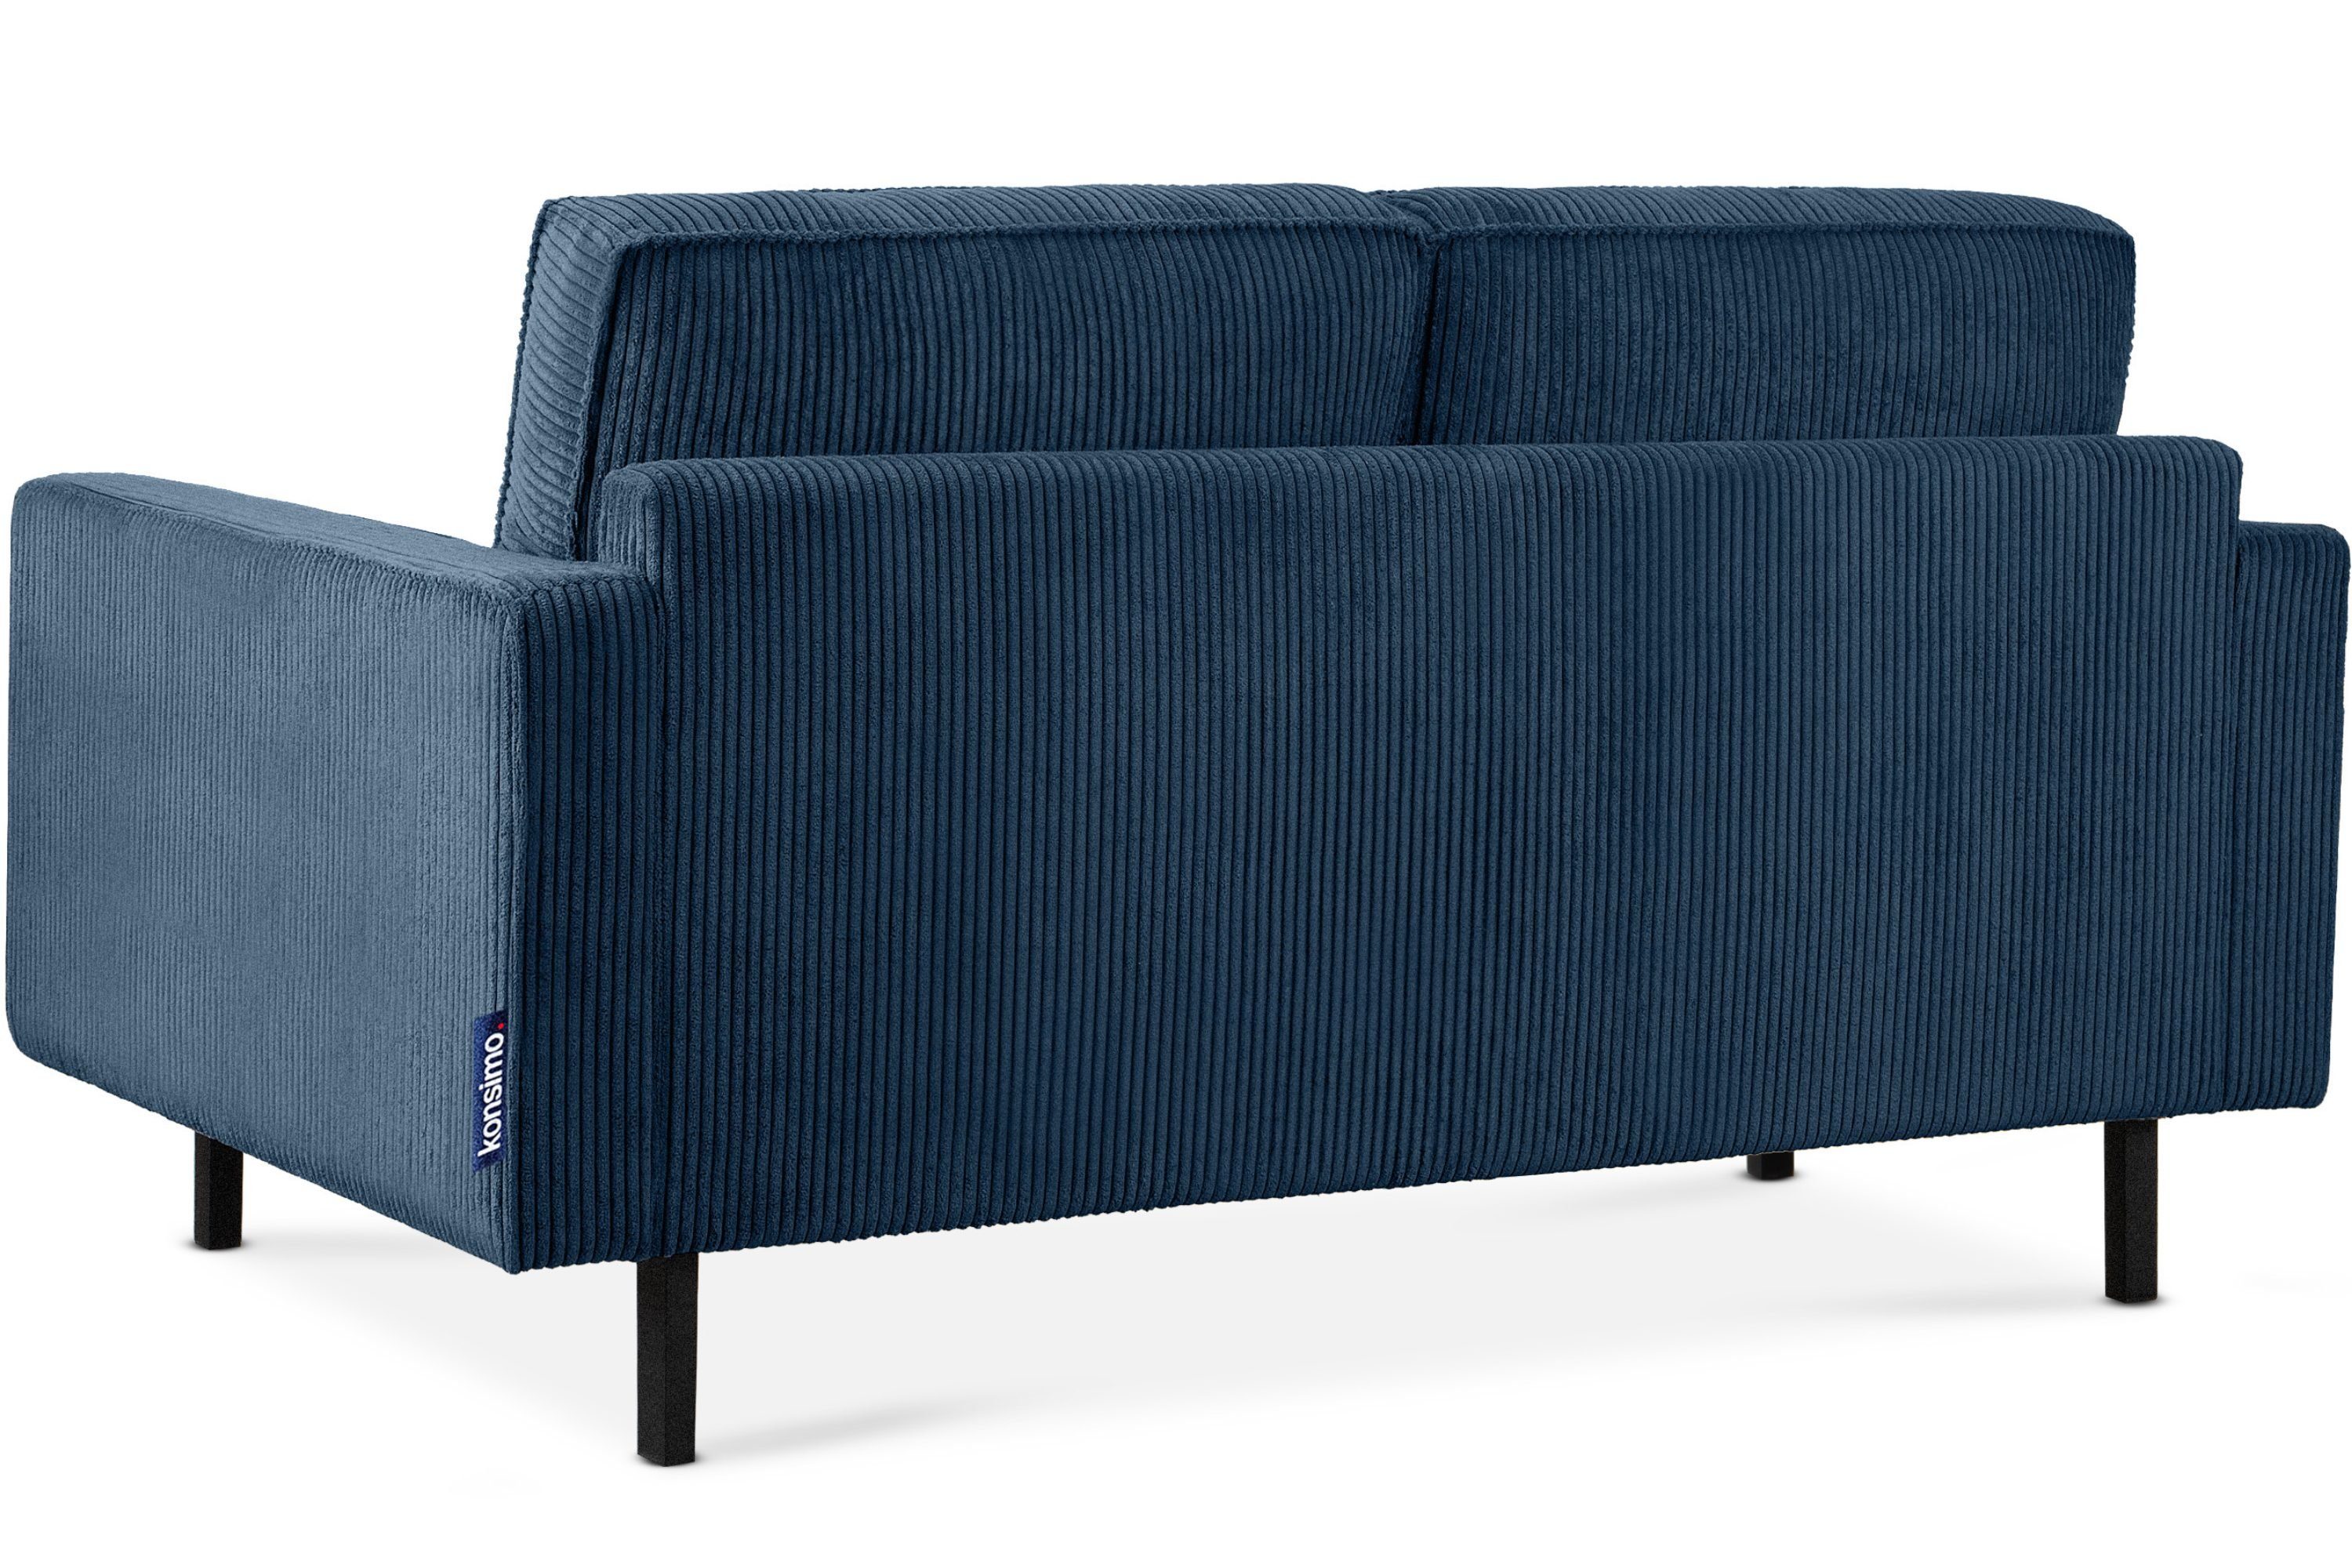 Konsimo 2-Sitzer INVIA Friendly Cord-Stoff aus Polsterung Pet in hochwertigem Schaumstoff, Zweisitzer-Sofa